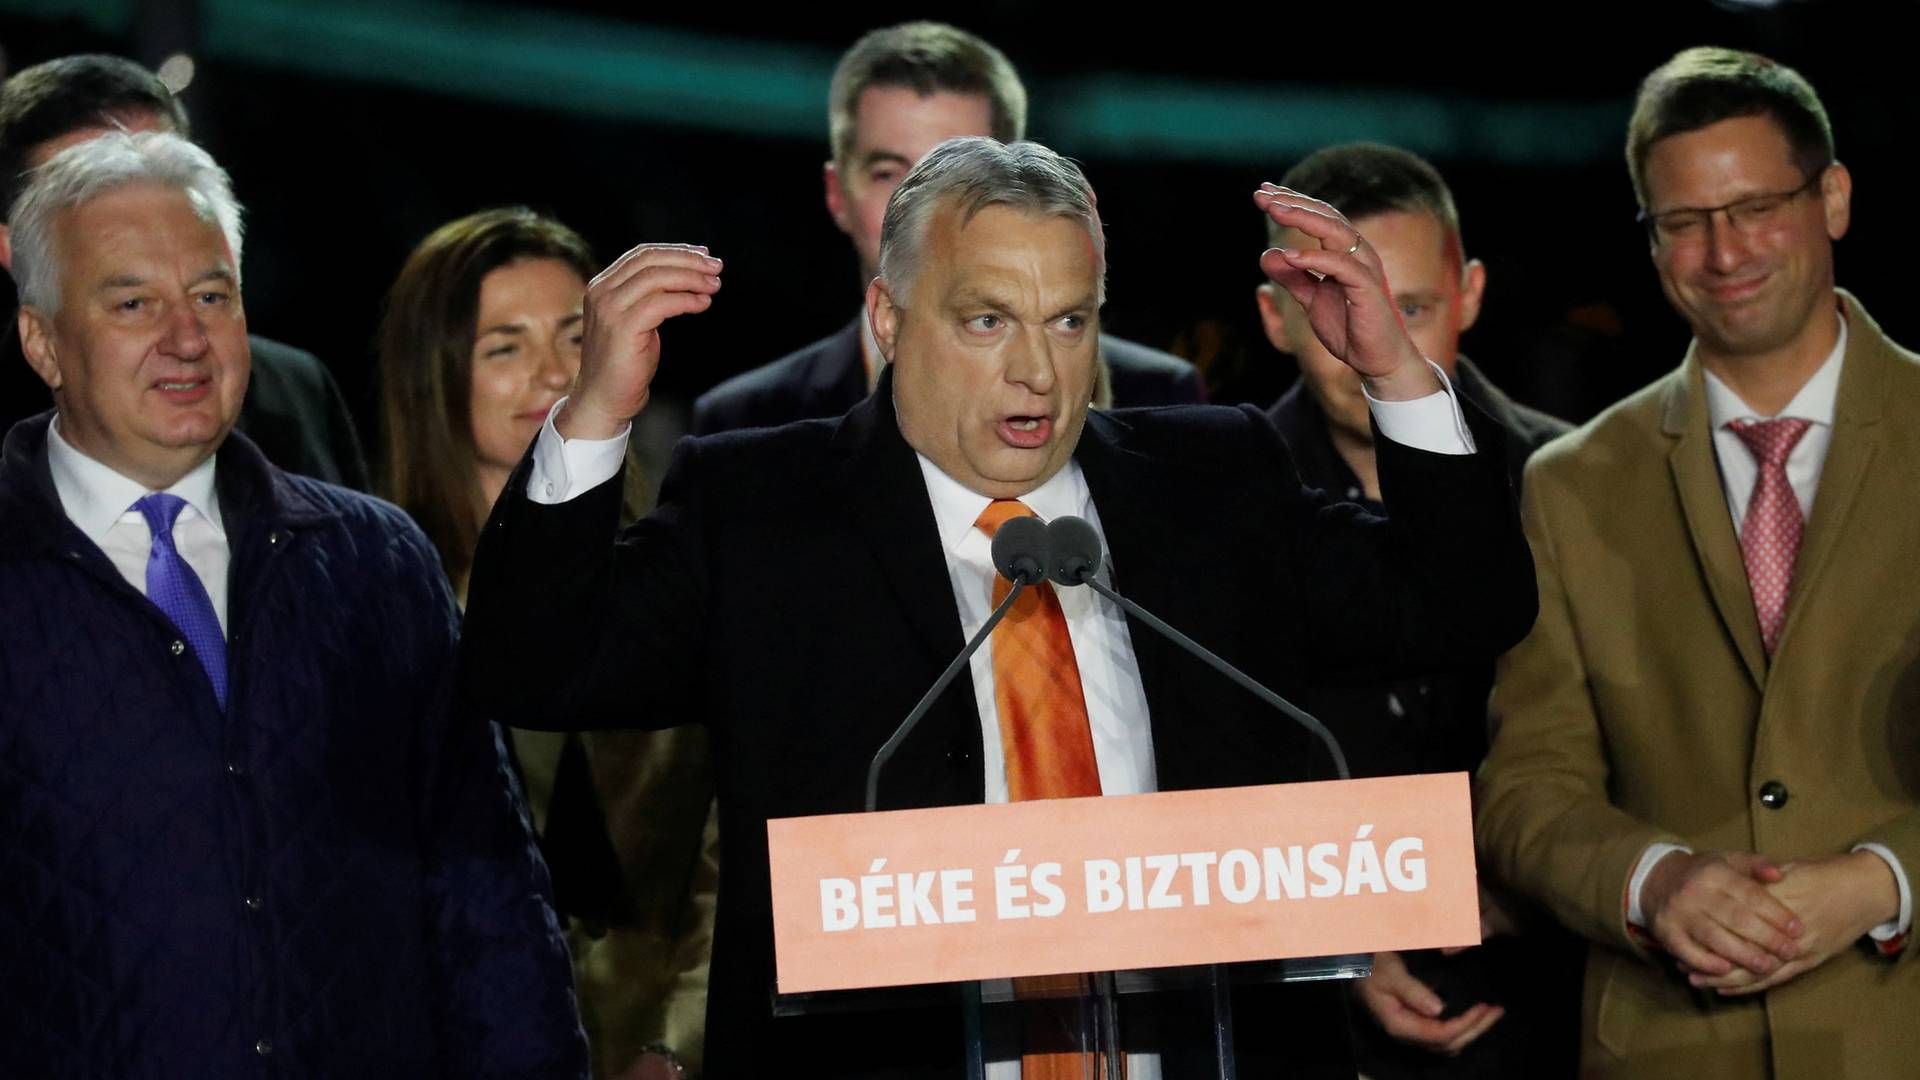 Viktor Orbans overbevisende sejr ved valget i Ungarn kan give problemer med enigheden i EU om yderligere sanktioner mod Rusland. | Foto: BERNADETT SZABO/REUTERS / X02784